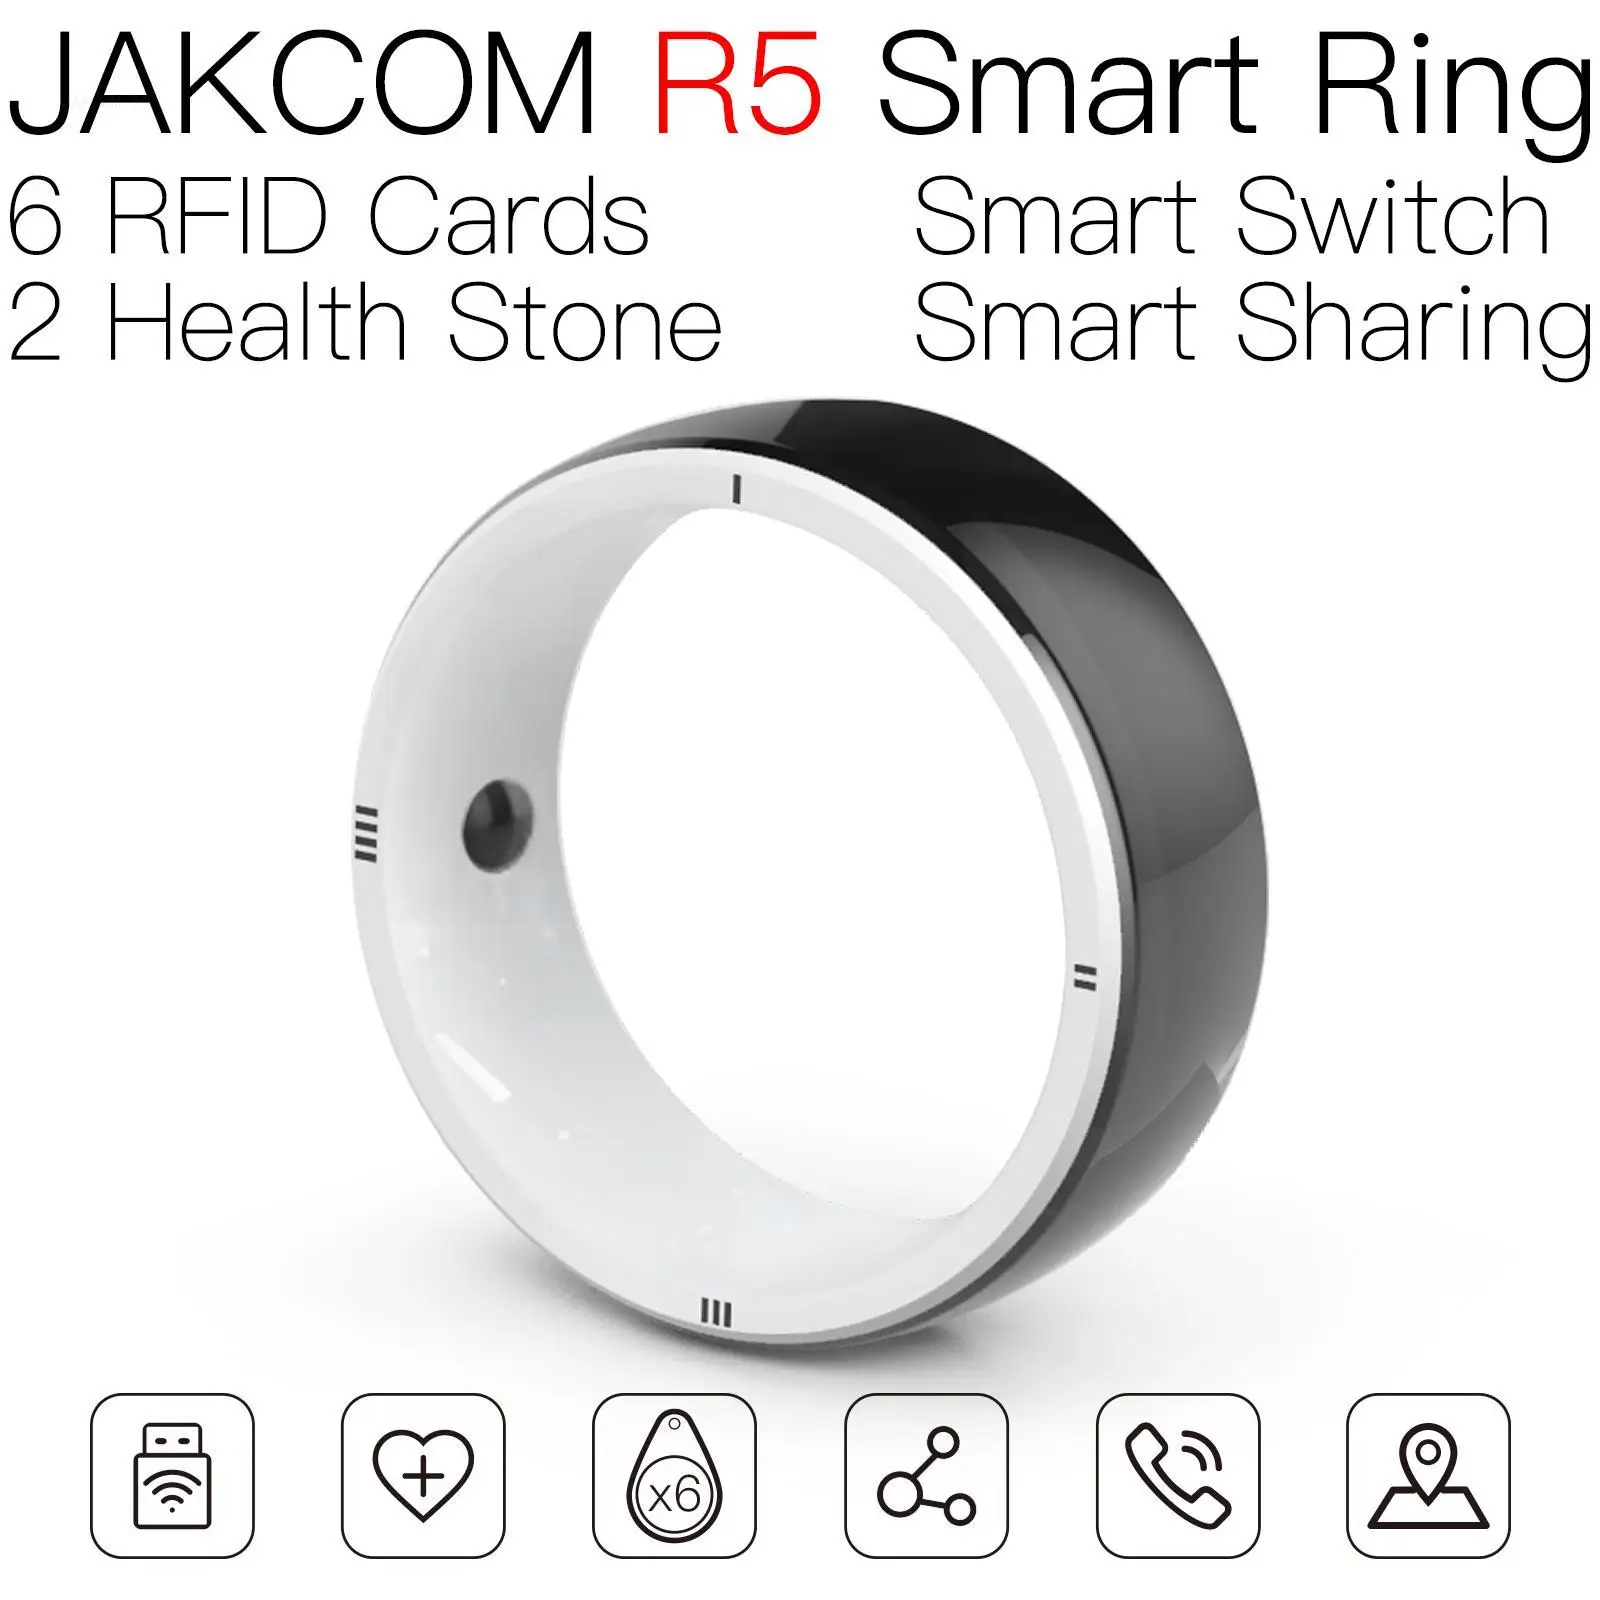 

Умное кольцо JAKCOM R5, новее, чем m13s, стандартная метка, дверная карта, Дубликатор, Премиум VDI king ns, чип переключателя rfid 125k, замок с